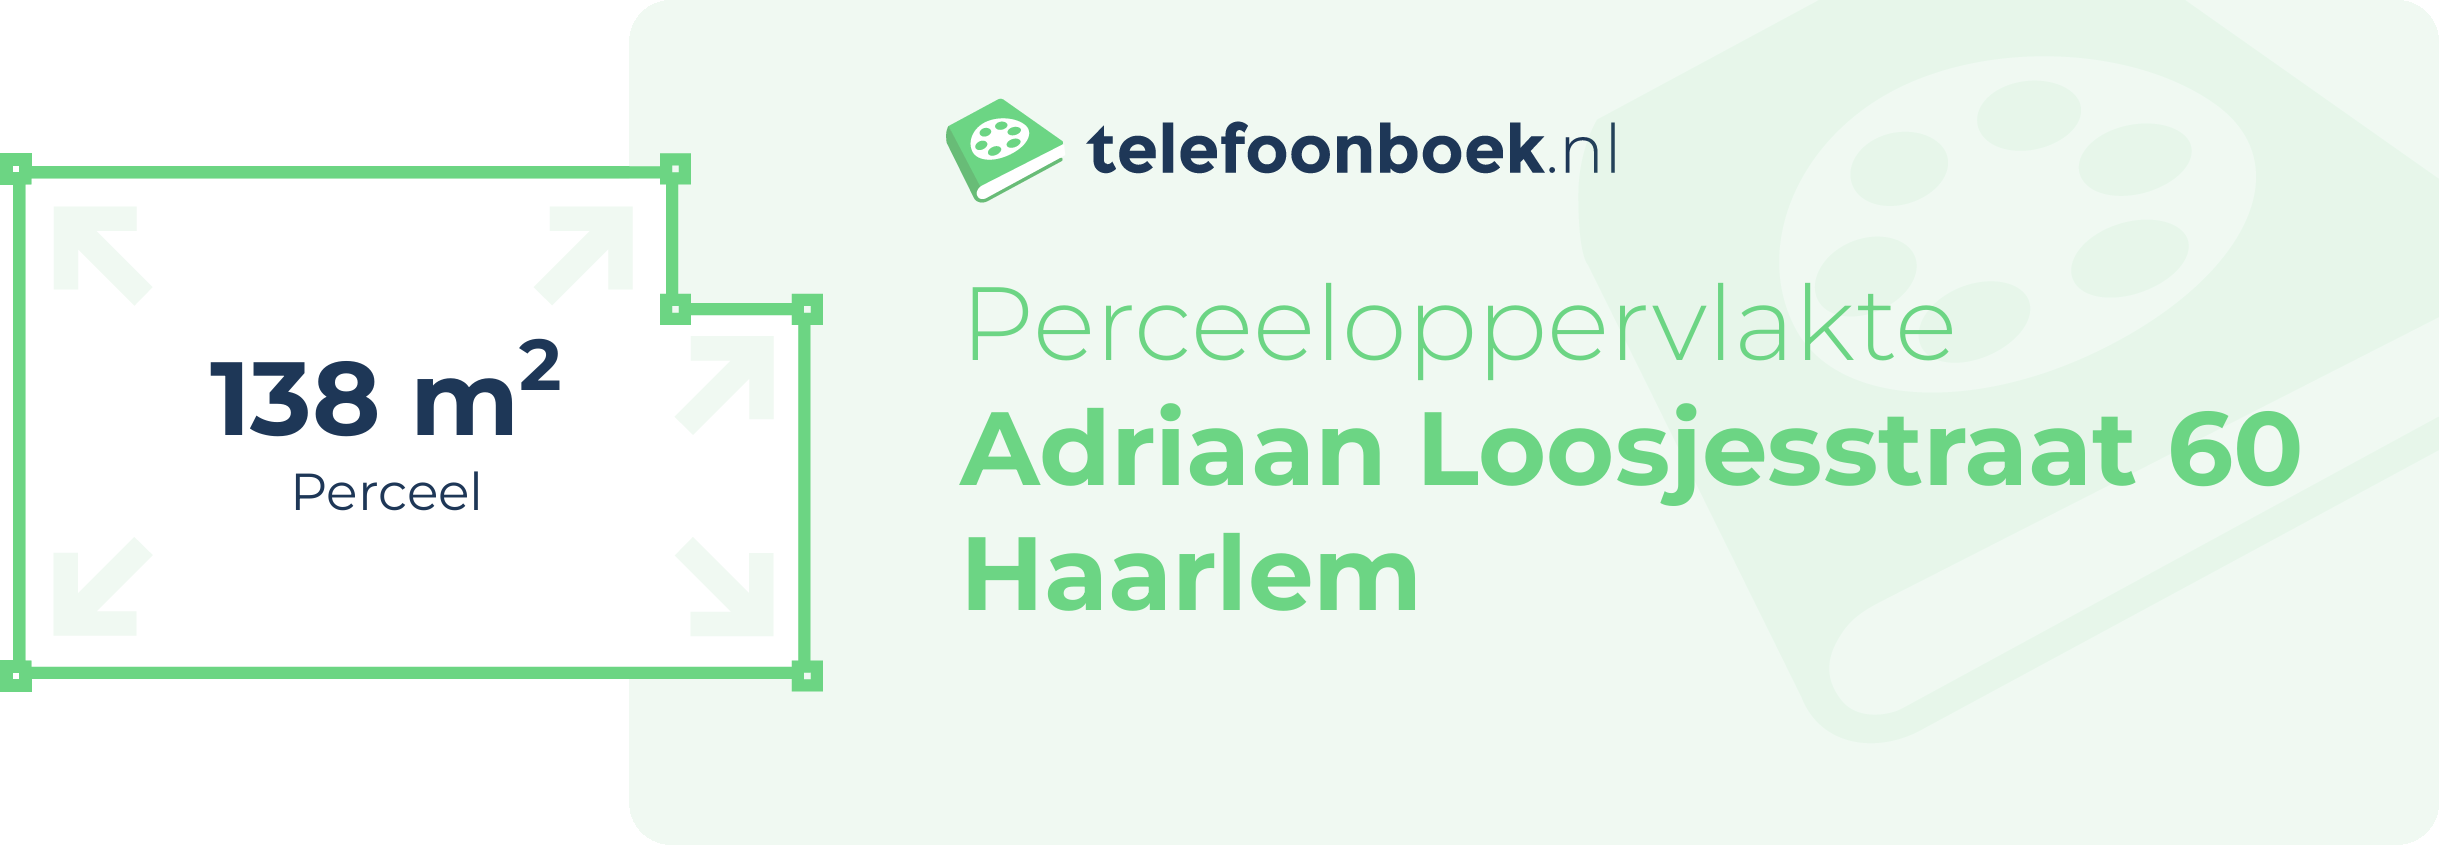 Perceeloppervlakte Adriaan Loosjesstraat 60 Haarlem